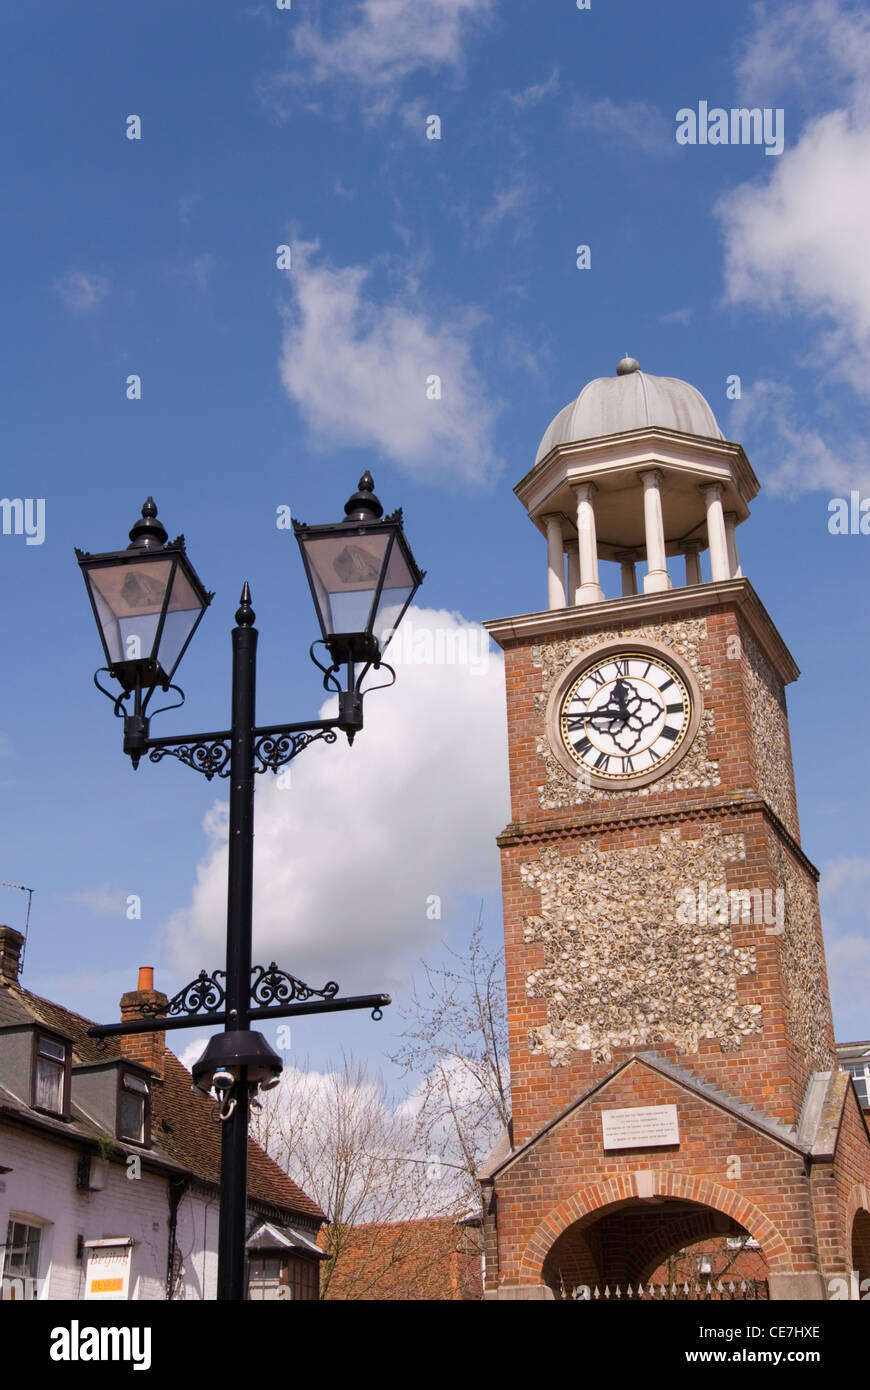 Chesham - Dollar. Stadt Clock Tower und dekorative Schmiedearbeiten Straßenlaternen - betrachtet gegen blauen Himmel Stockfoto